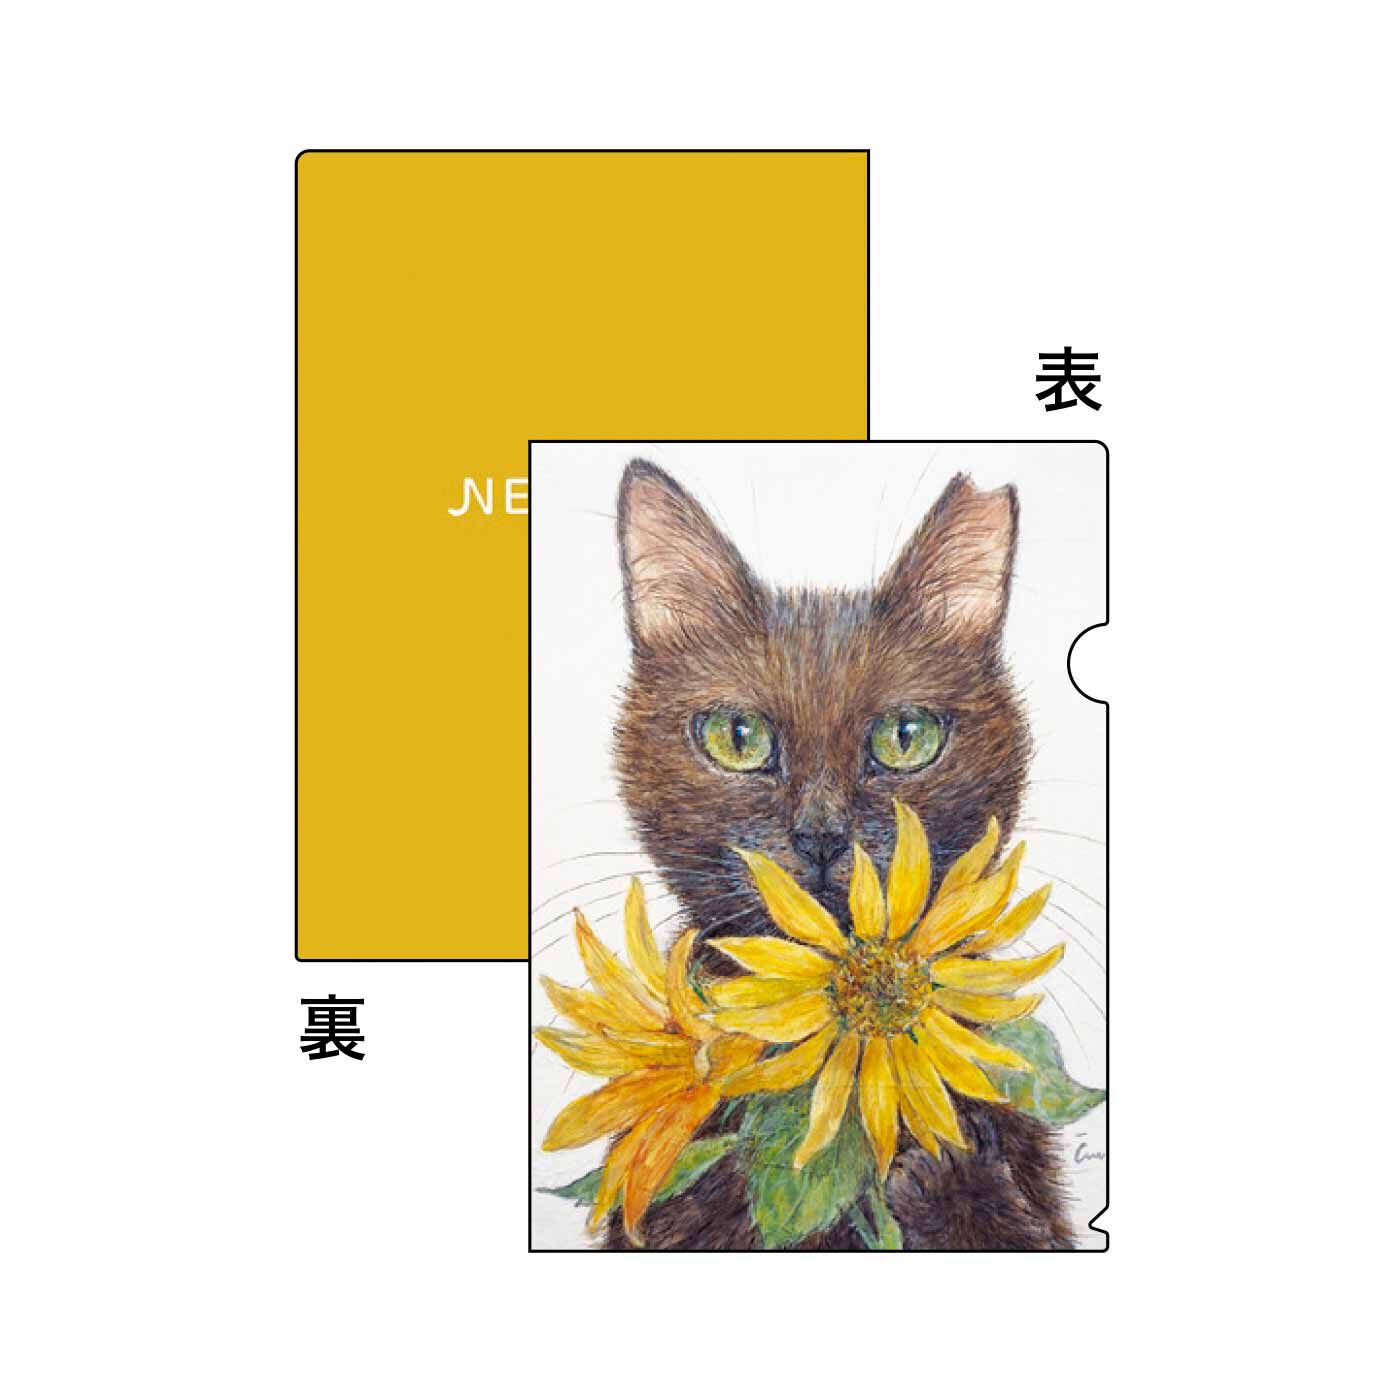 猫部|Cimi Cat Painter×猫部 地域猫チャリティークリアファイル2023